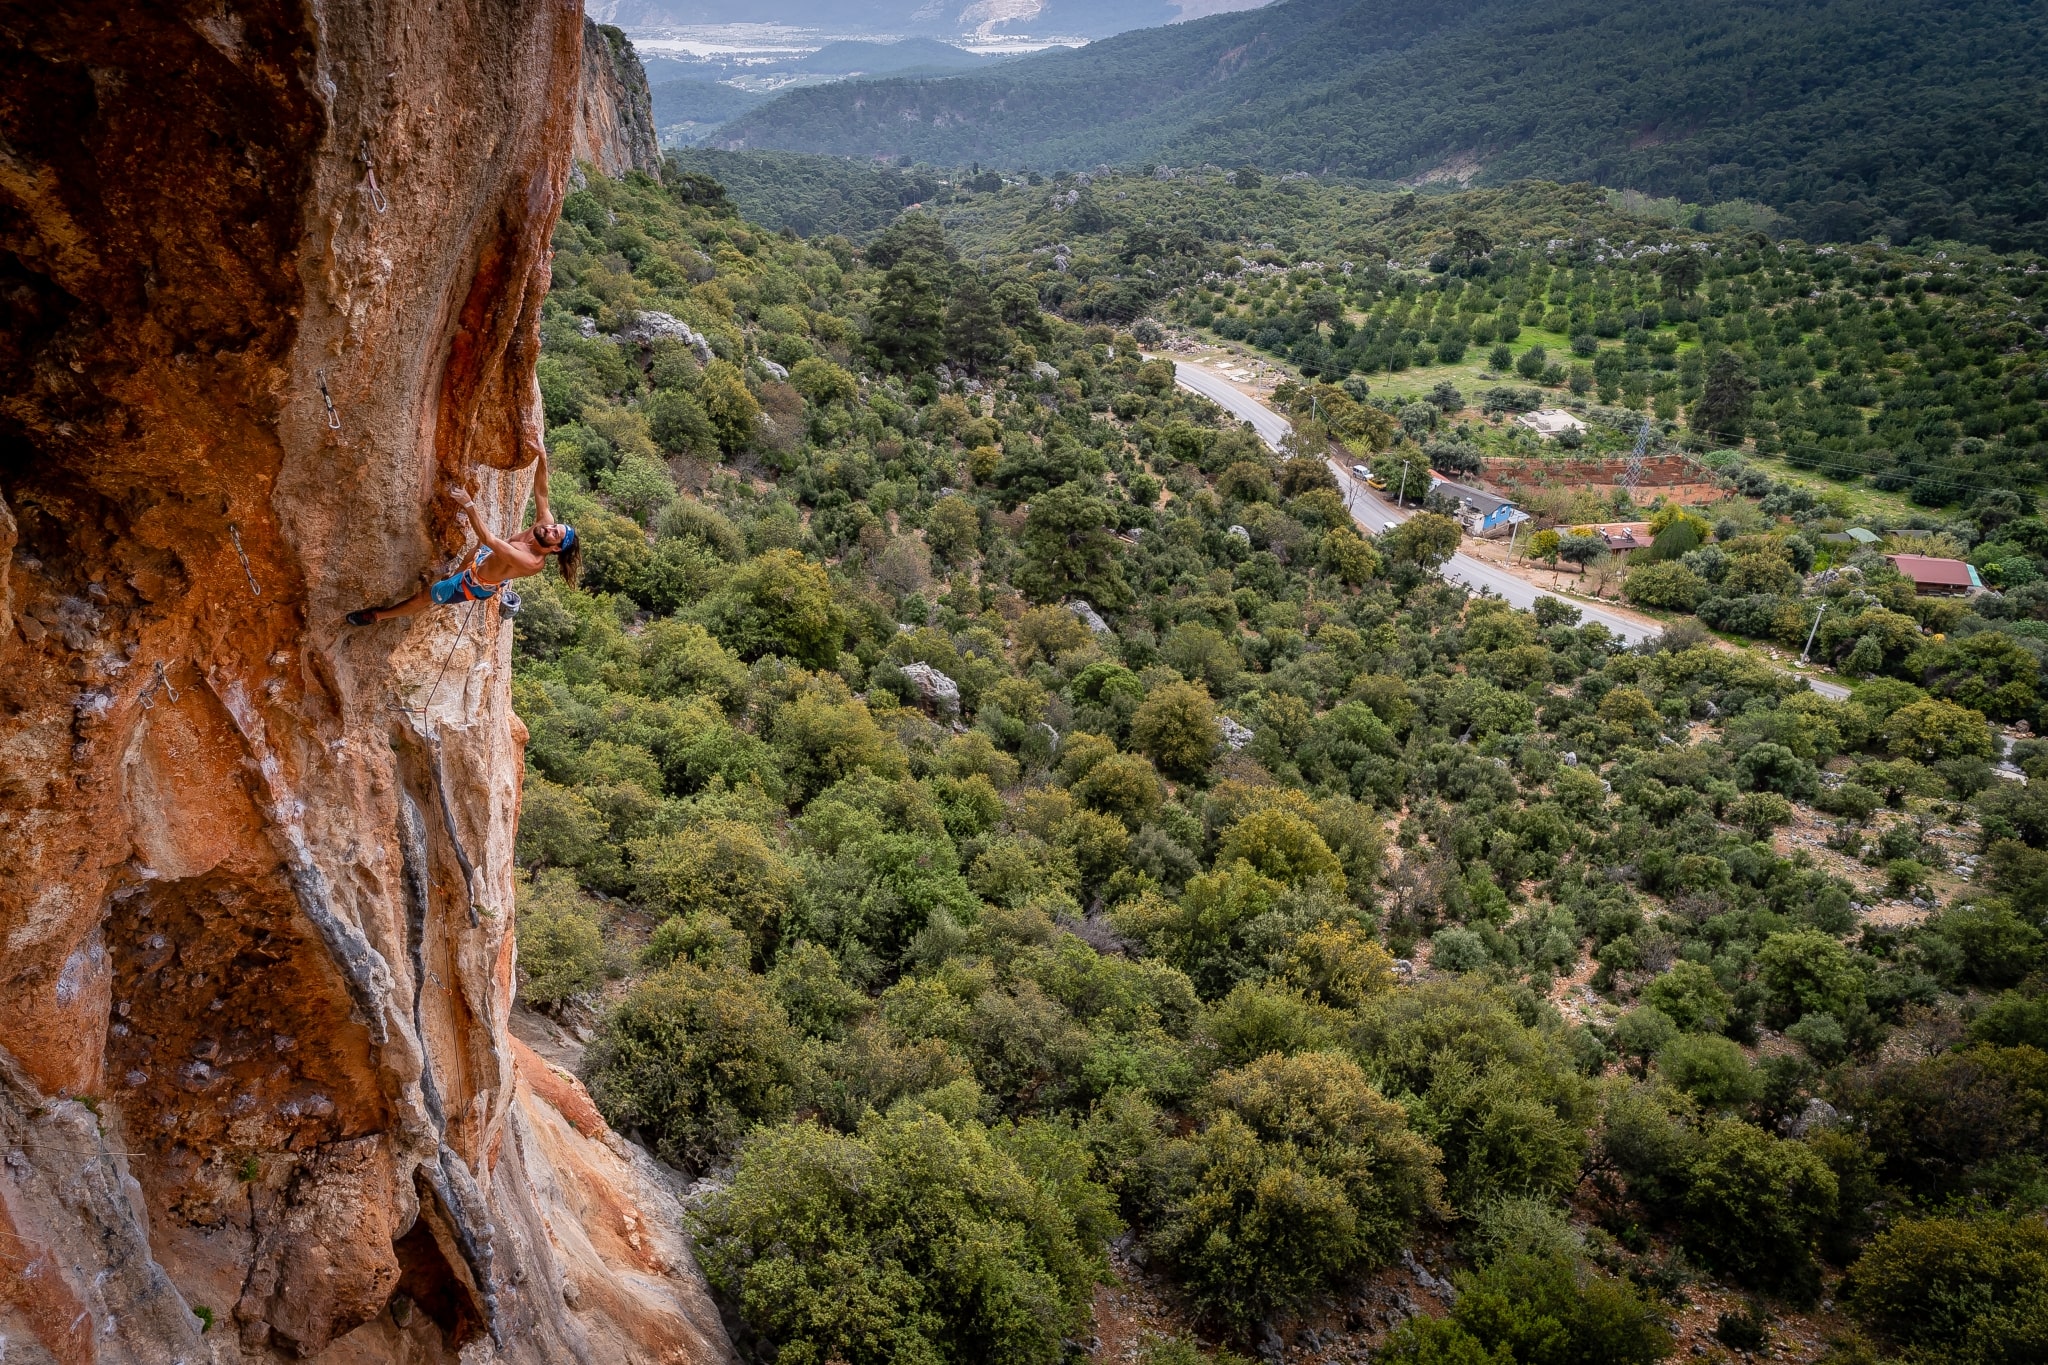 Una persona che si arrampica su roccia a Geyikbayiri, in Turchia, con la valle alle spalle